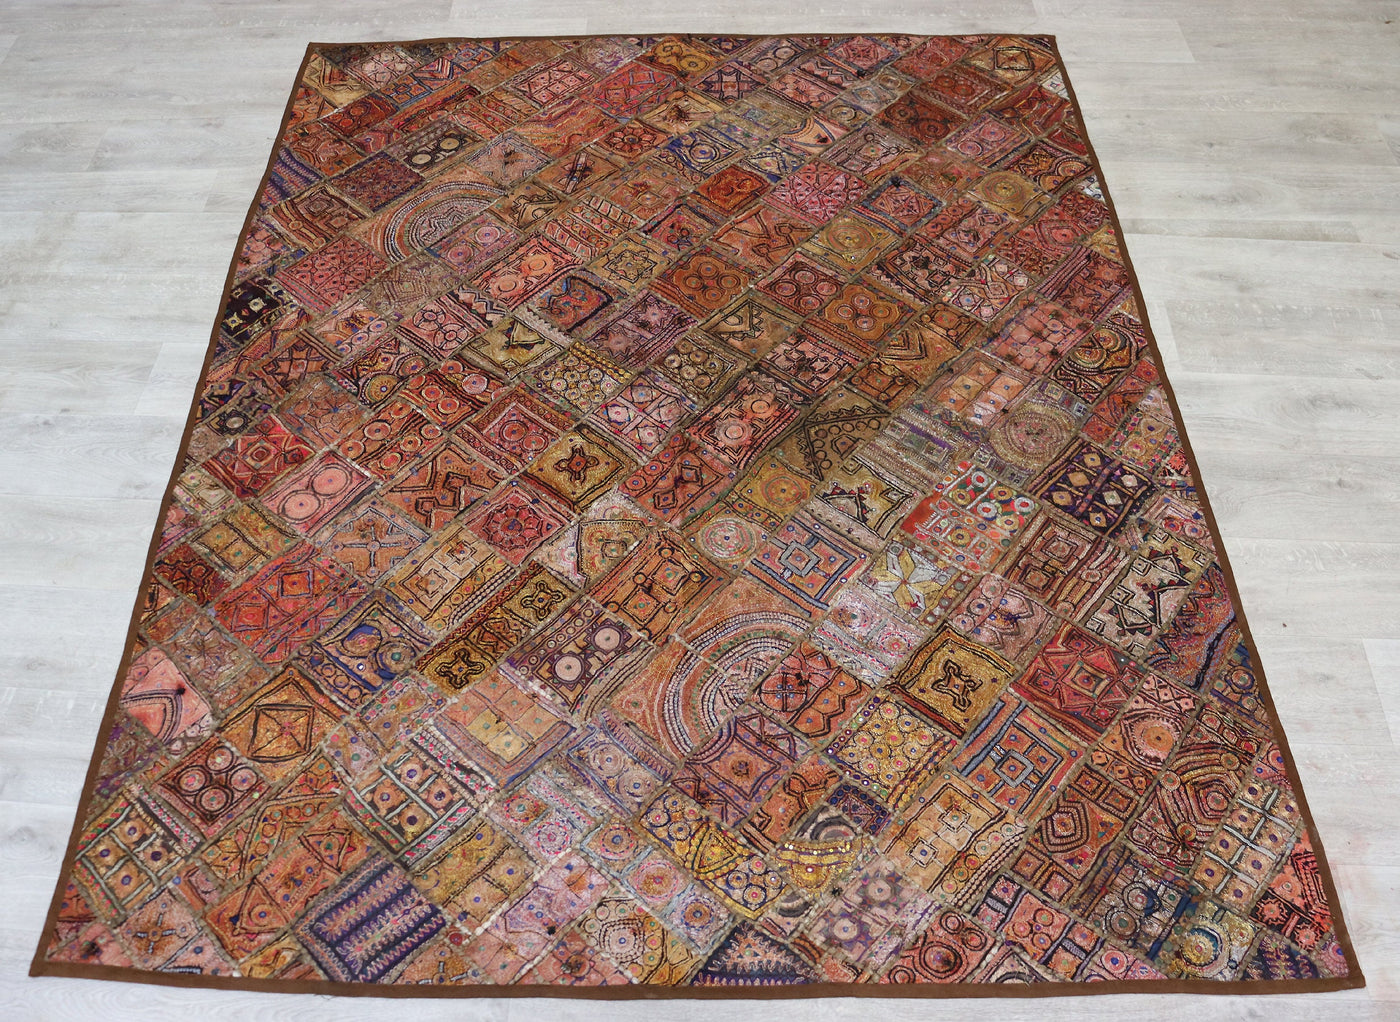 235x185 cm Vintage Bohemian orientalische Patchwork Wandbehang Wandteppich Teppich  Nr:22/14 Wandbehang Orientsbazar   